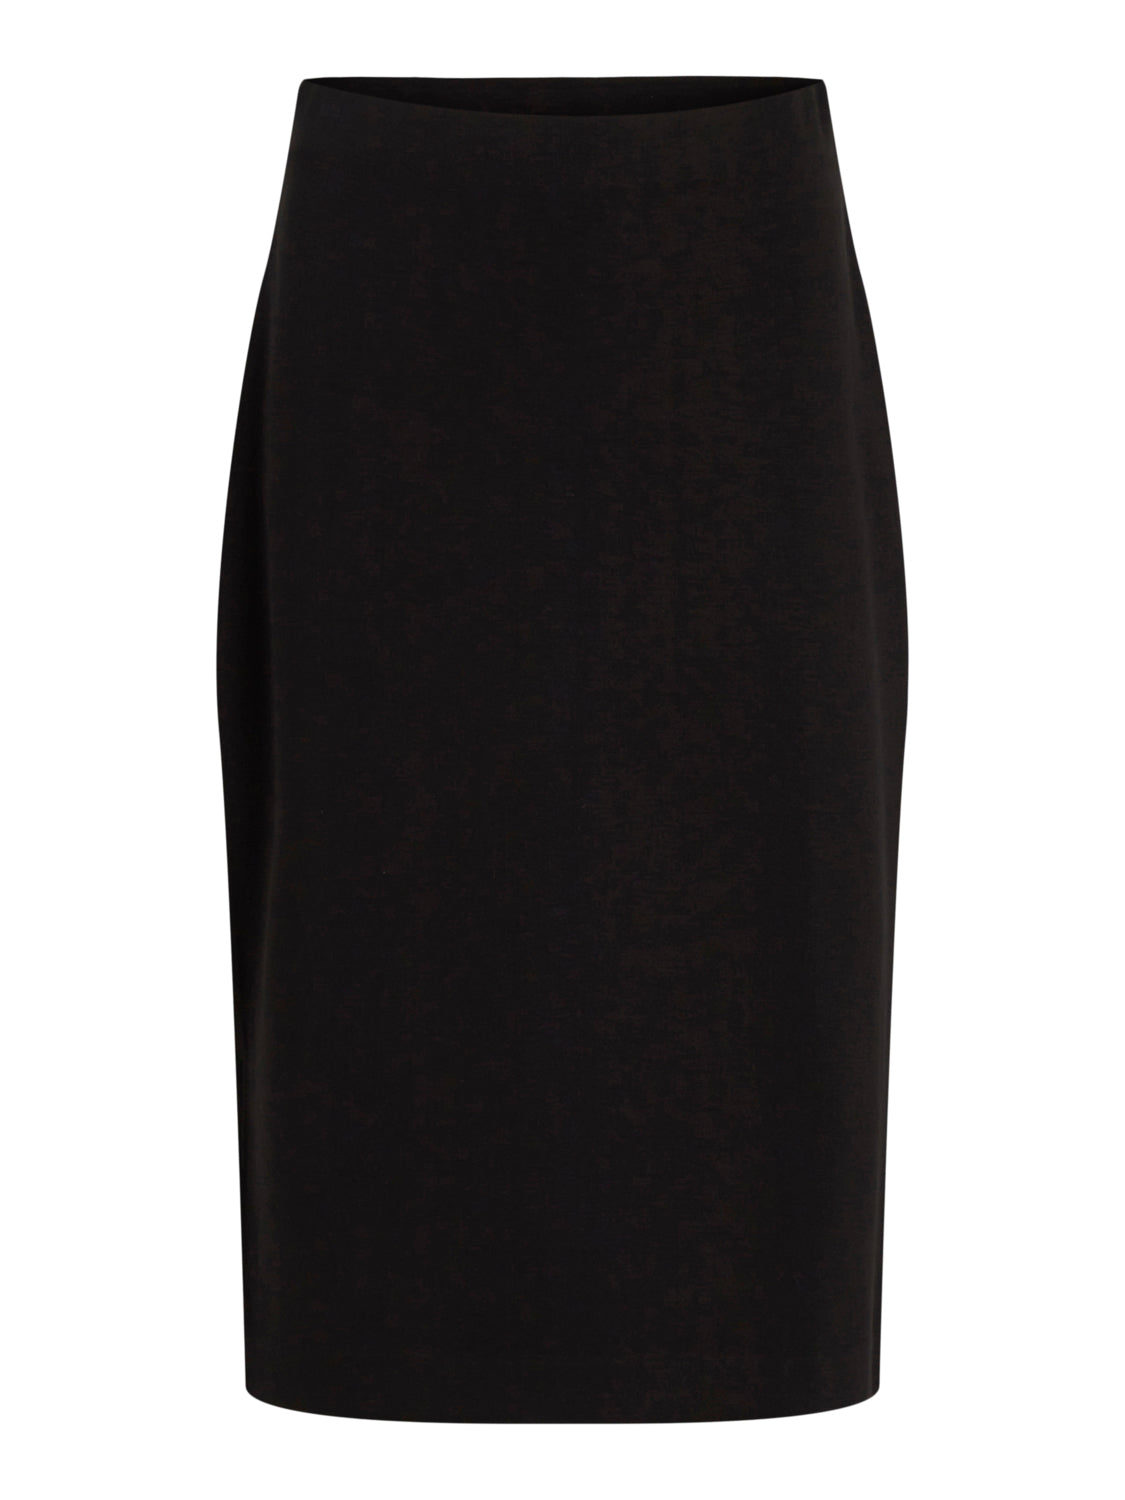 VIREFLECTA Skirt - Black